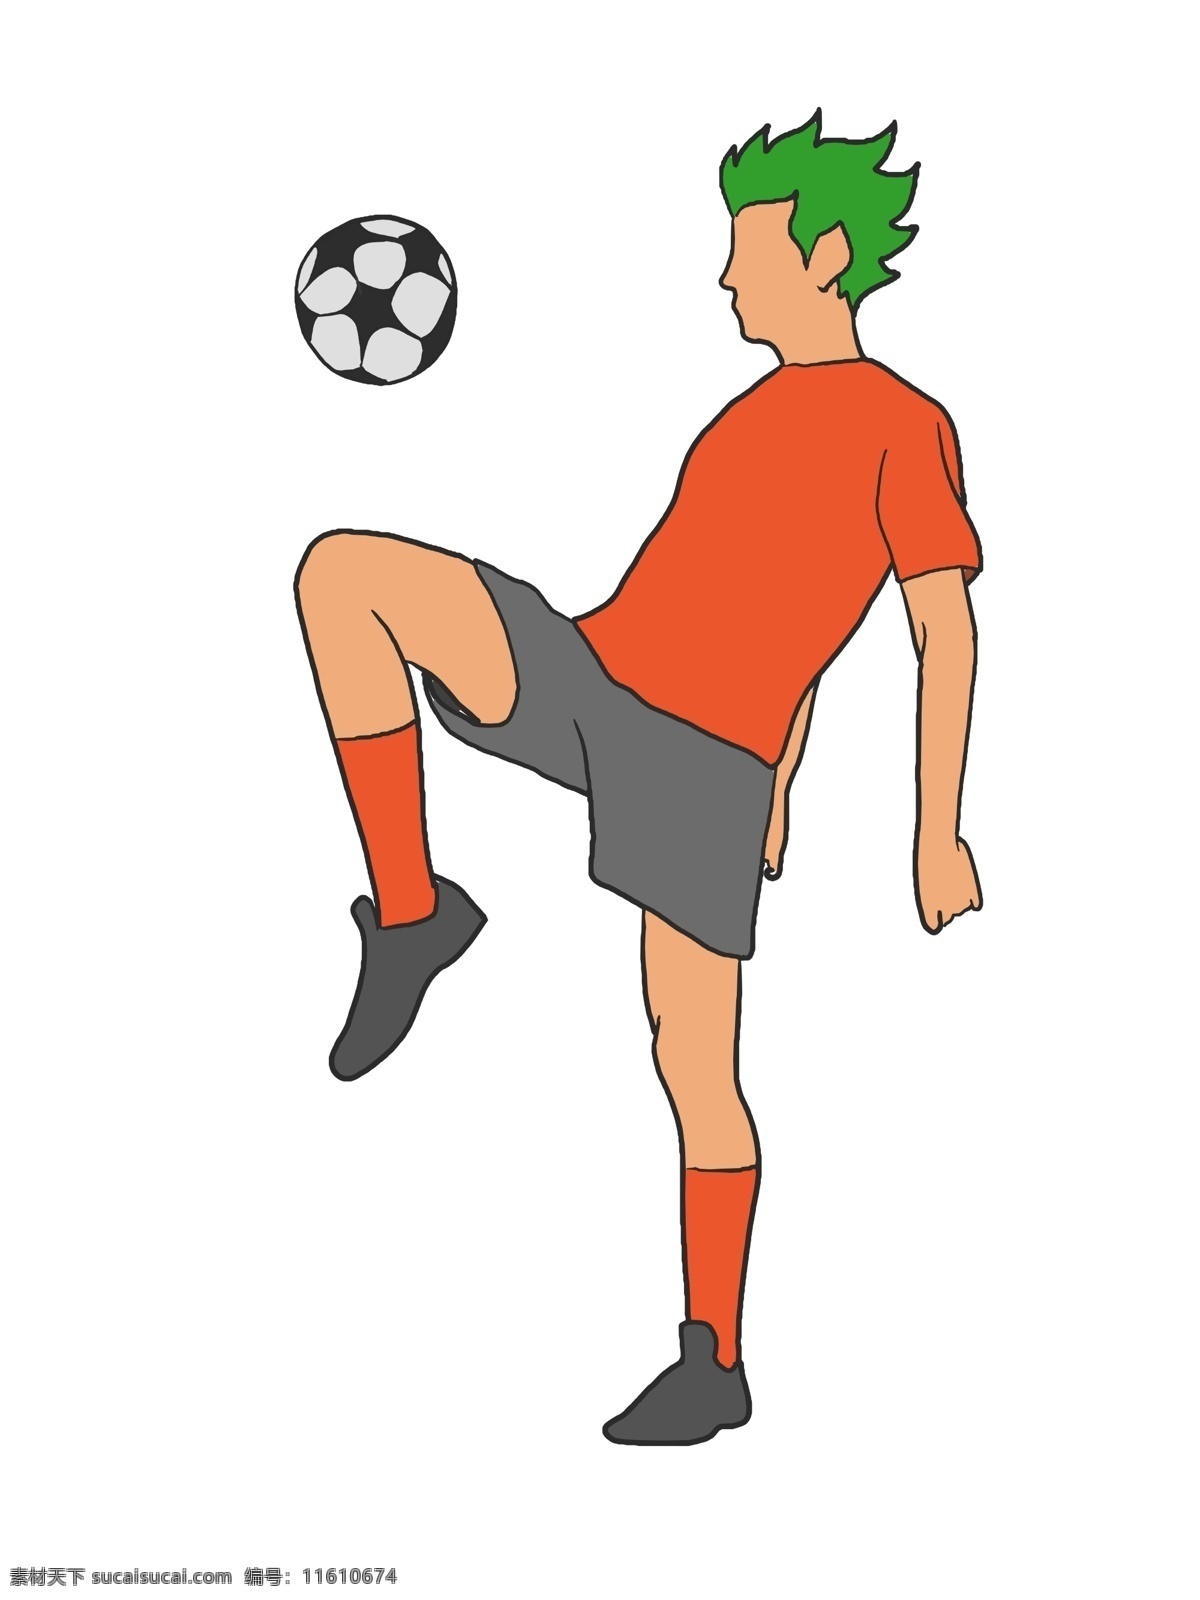 户外 踢 足球 小 男孩 户外健身 黑白足球 圆形足球 卡通人物 健身的小男孩 运动健身